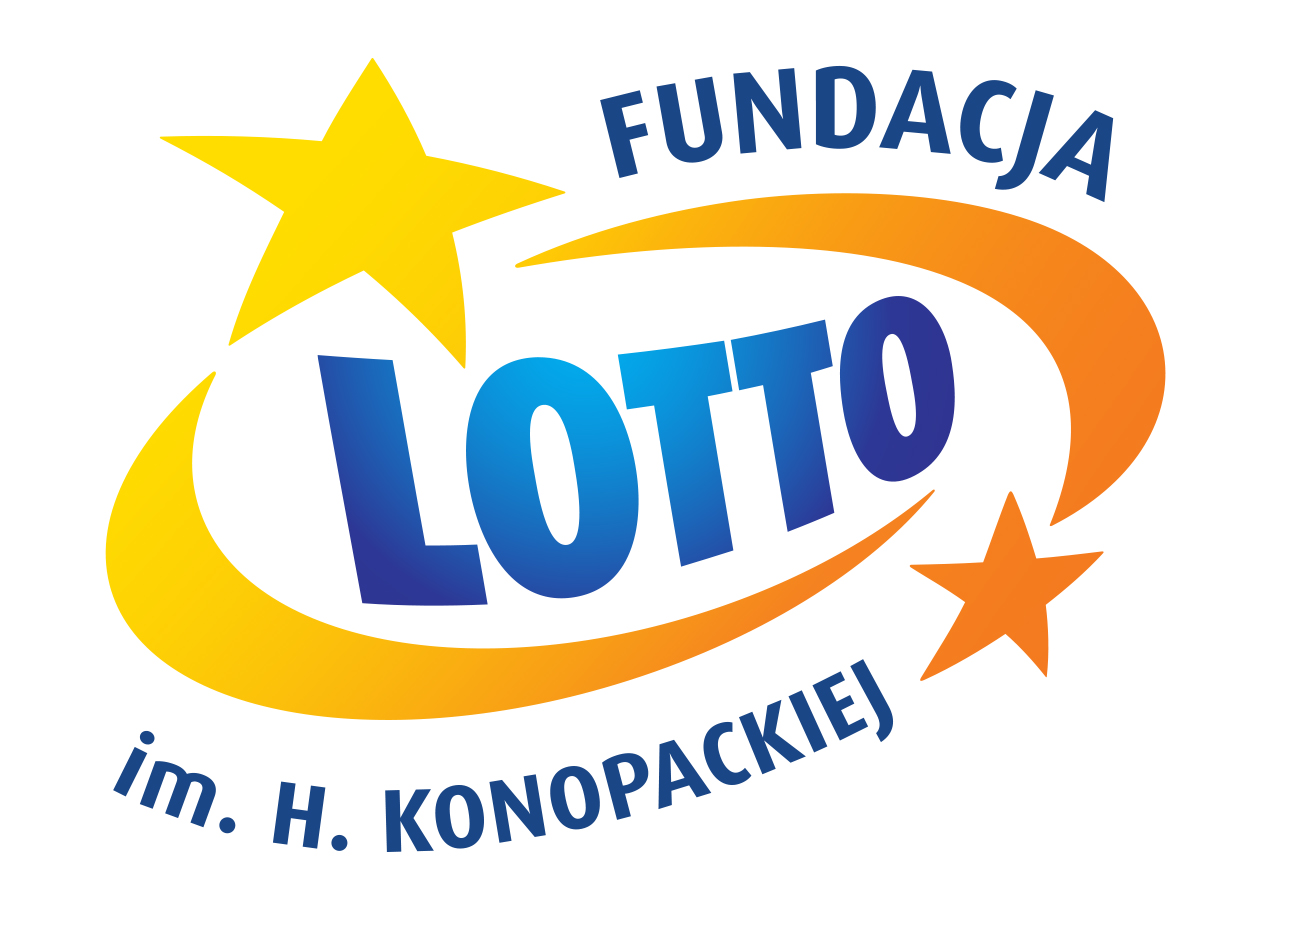 Fundacja Lotto